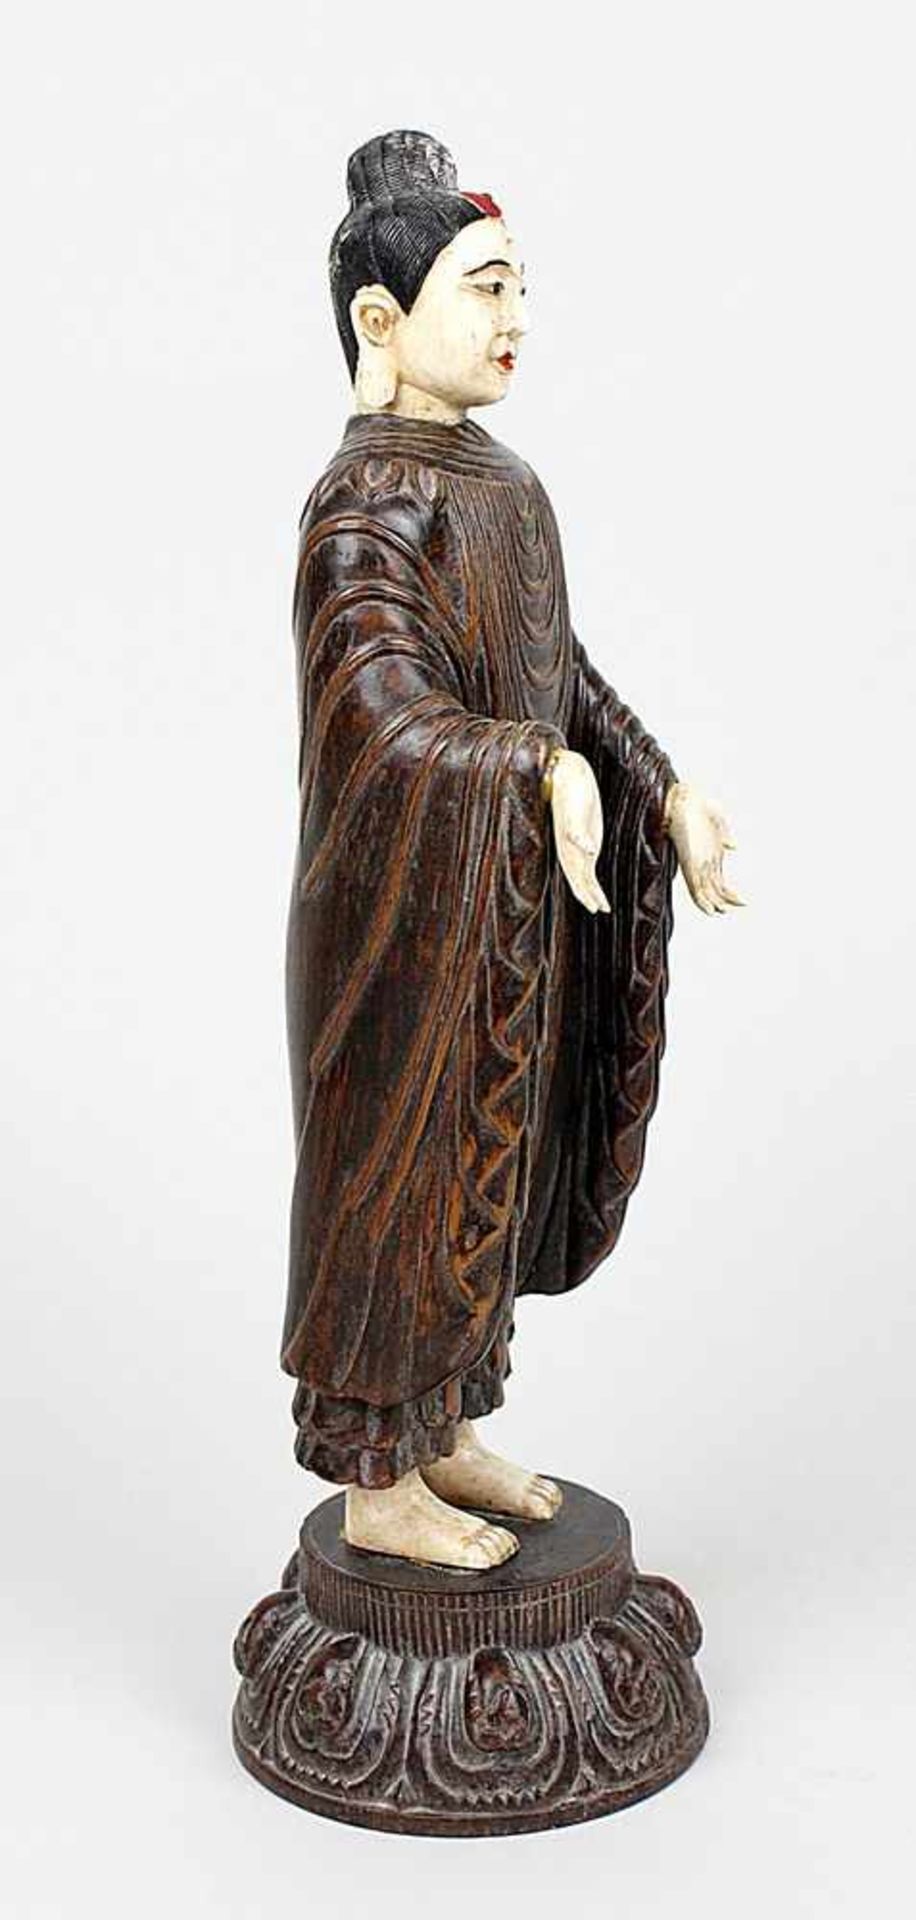 Stehender Buddha, Japan um 1900. Geschnitzte Holz-Elfenbein-Kombinationsfigur. Kopf farbig bemalt. - Image 4 of 4